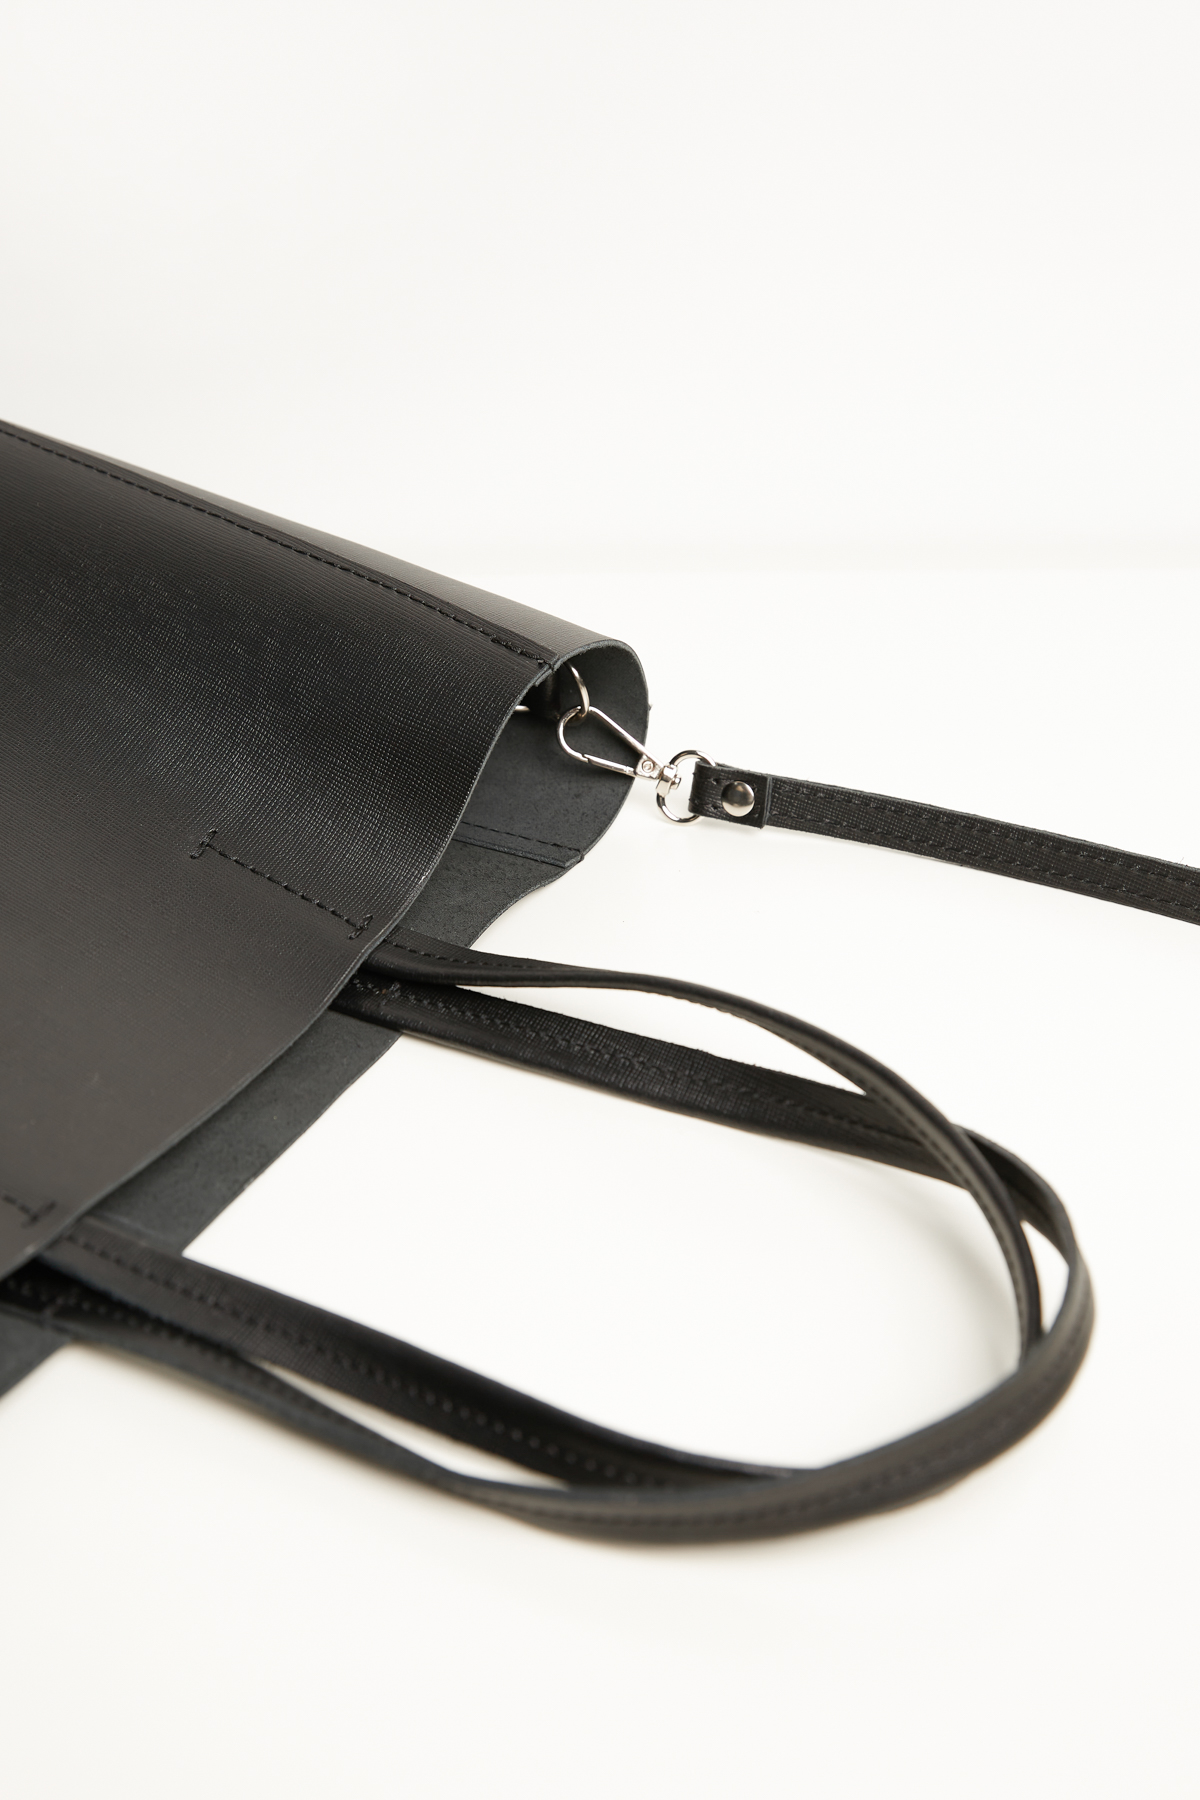 Black leather shopping bag, photo 2